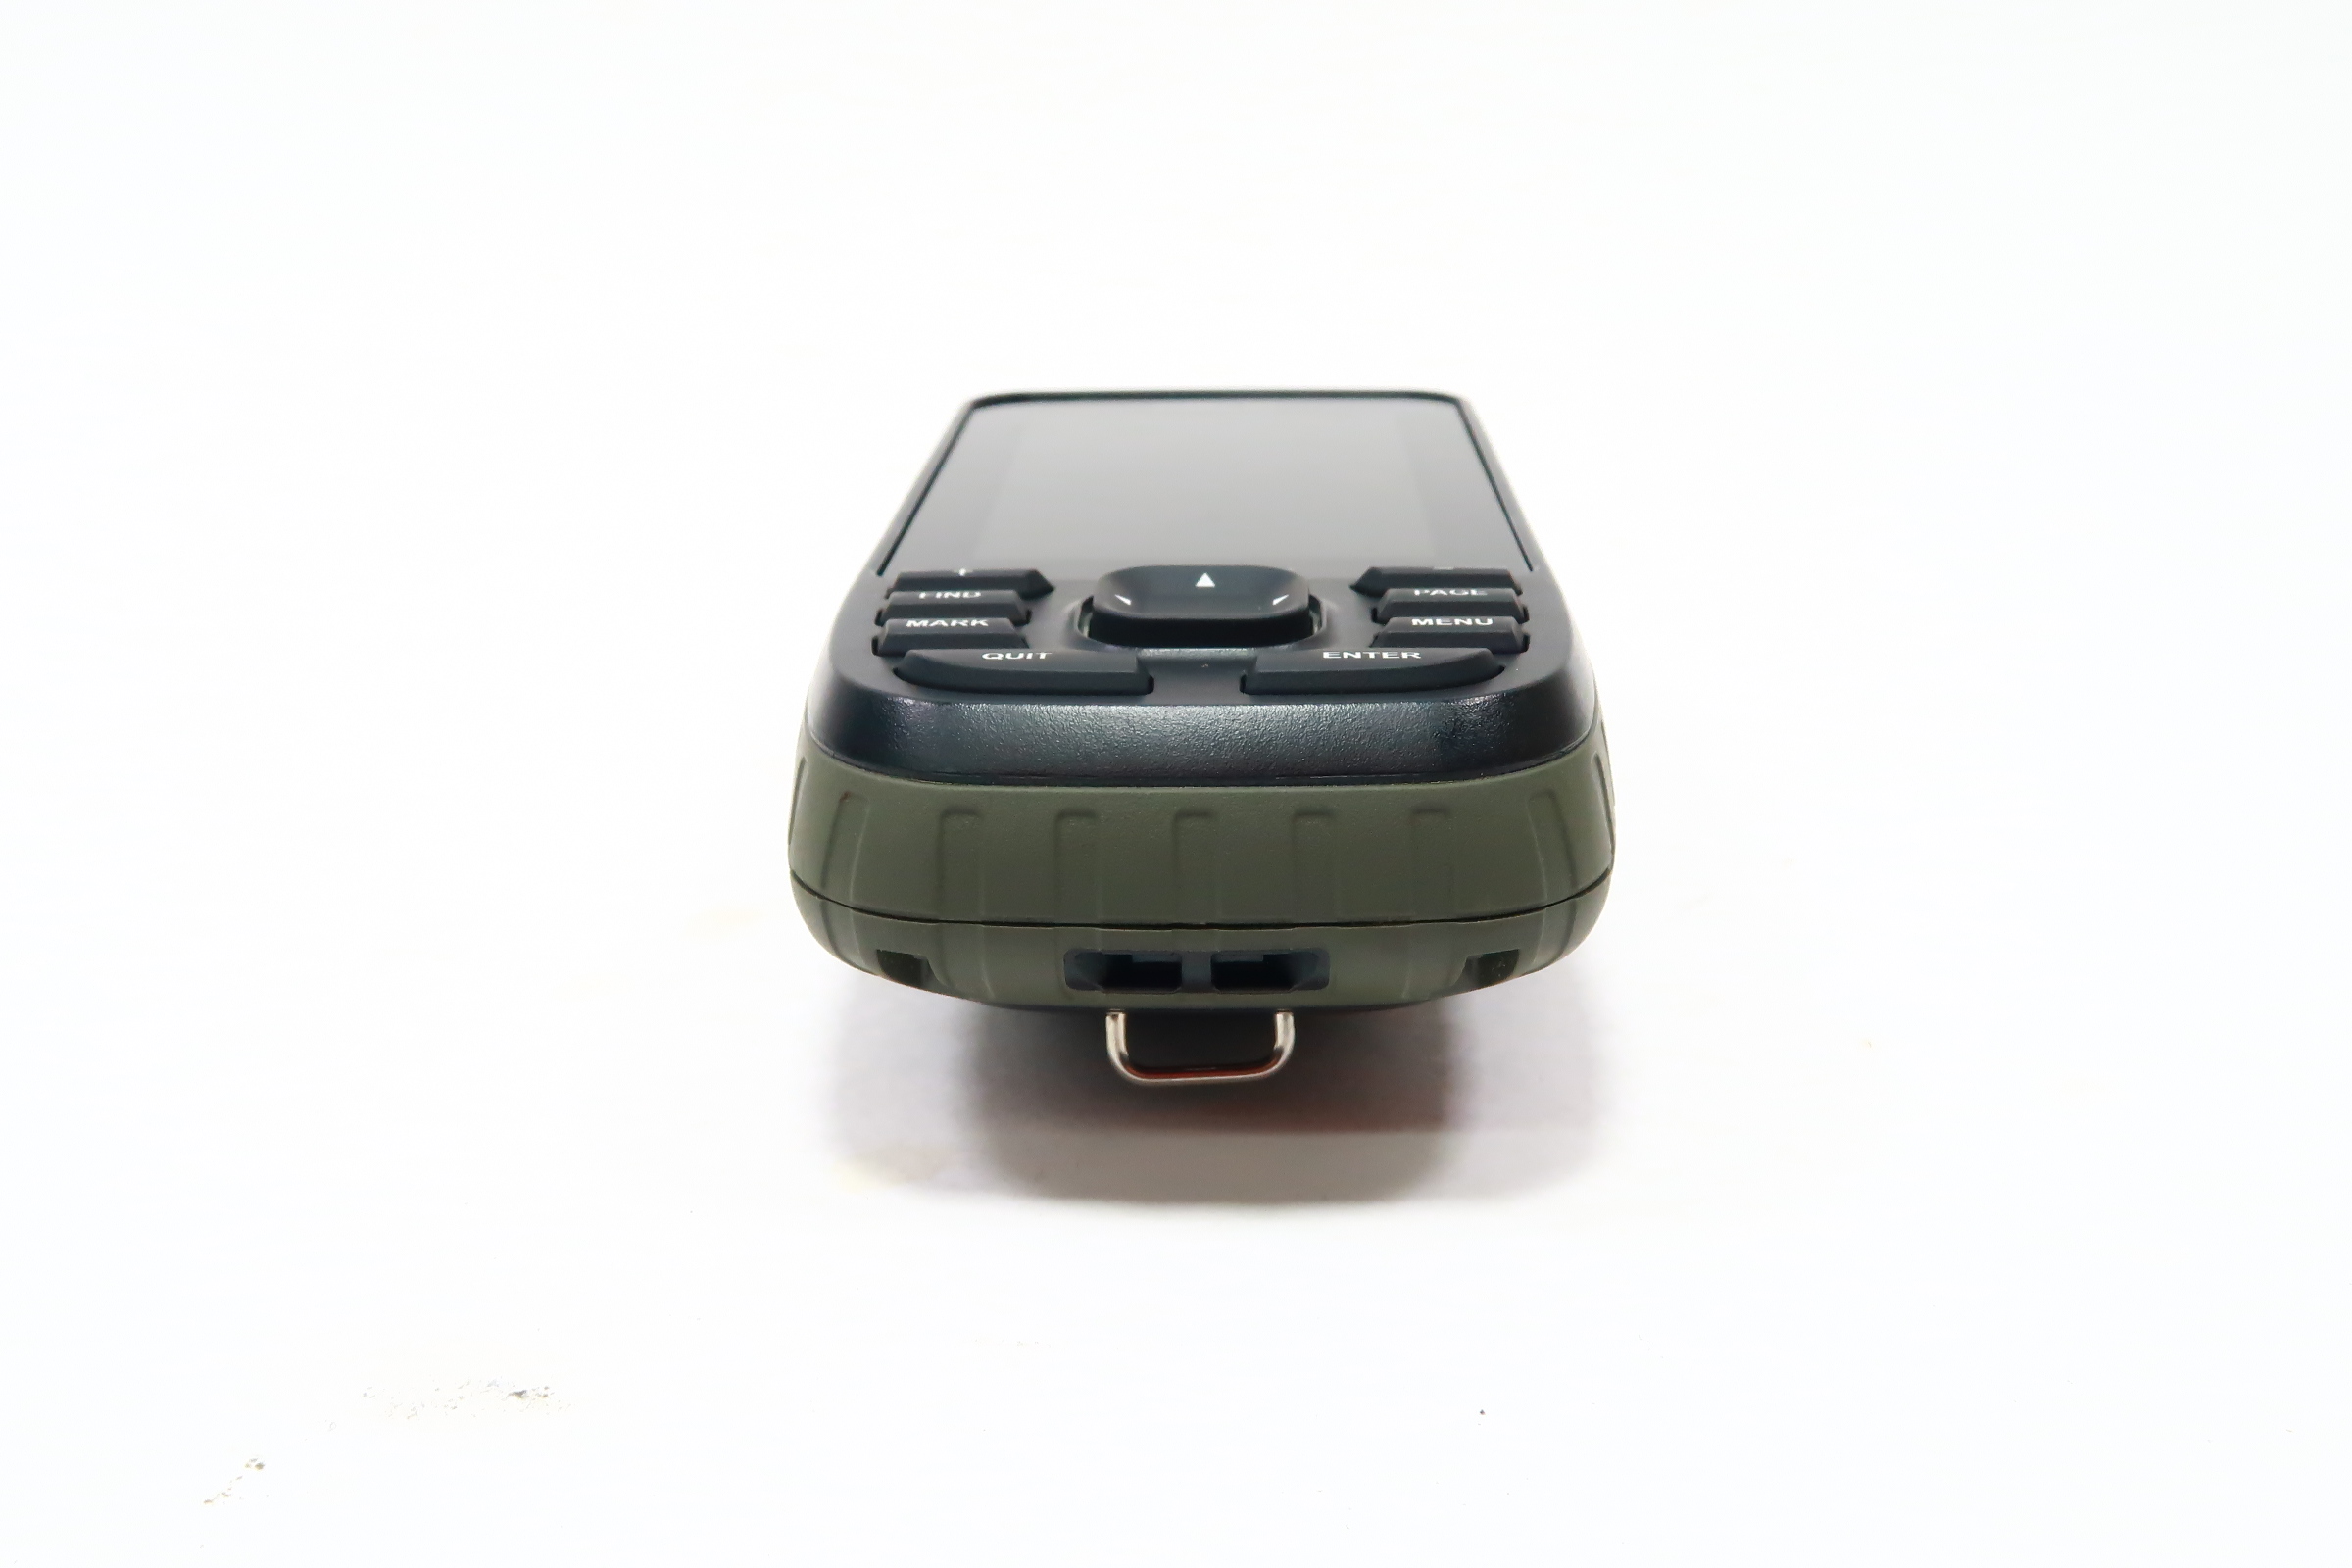 Garmin GPSMAP® 66s, Handheld GPS